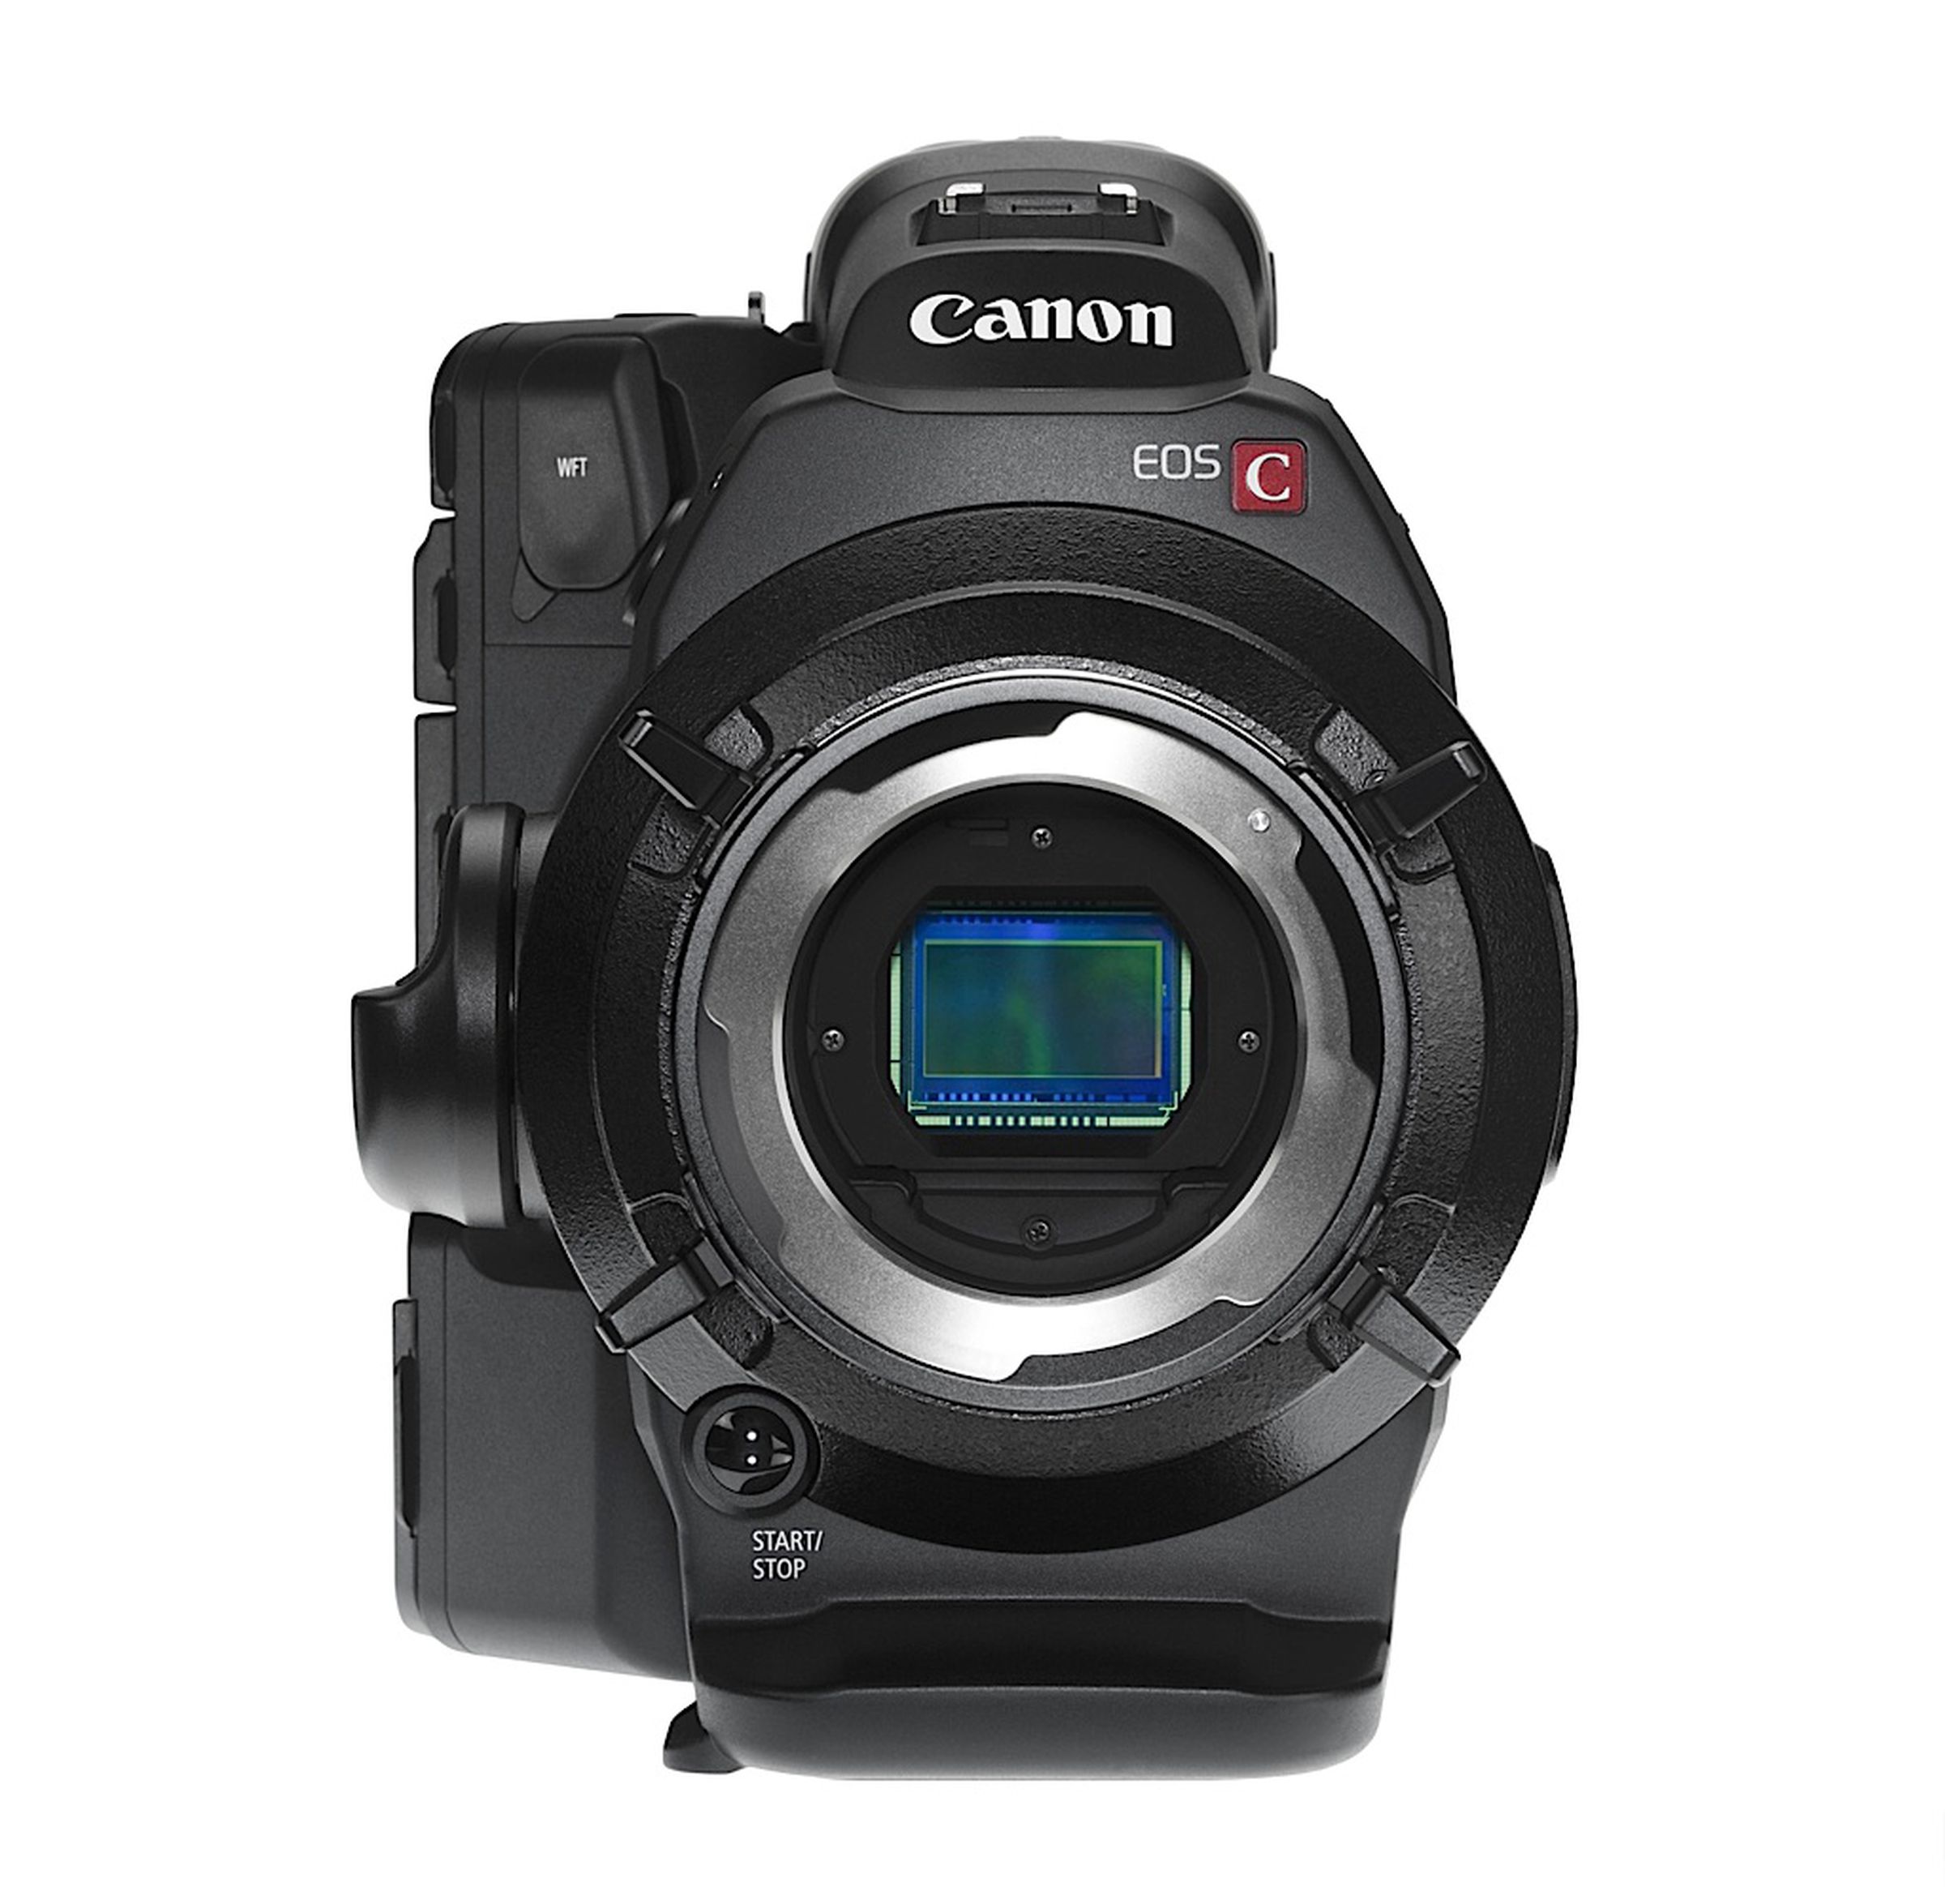 Canon EOS C300 press shots